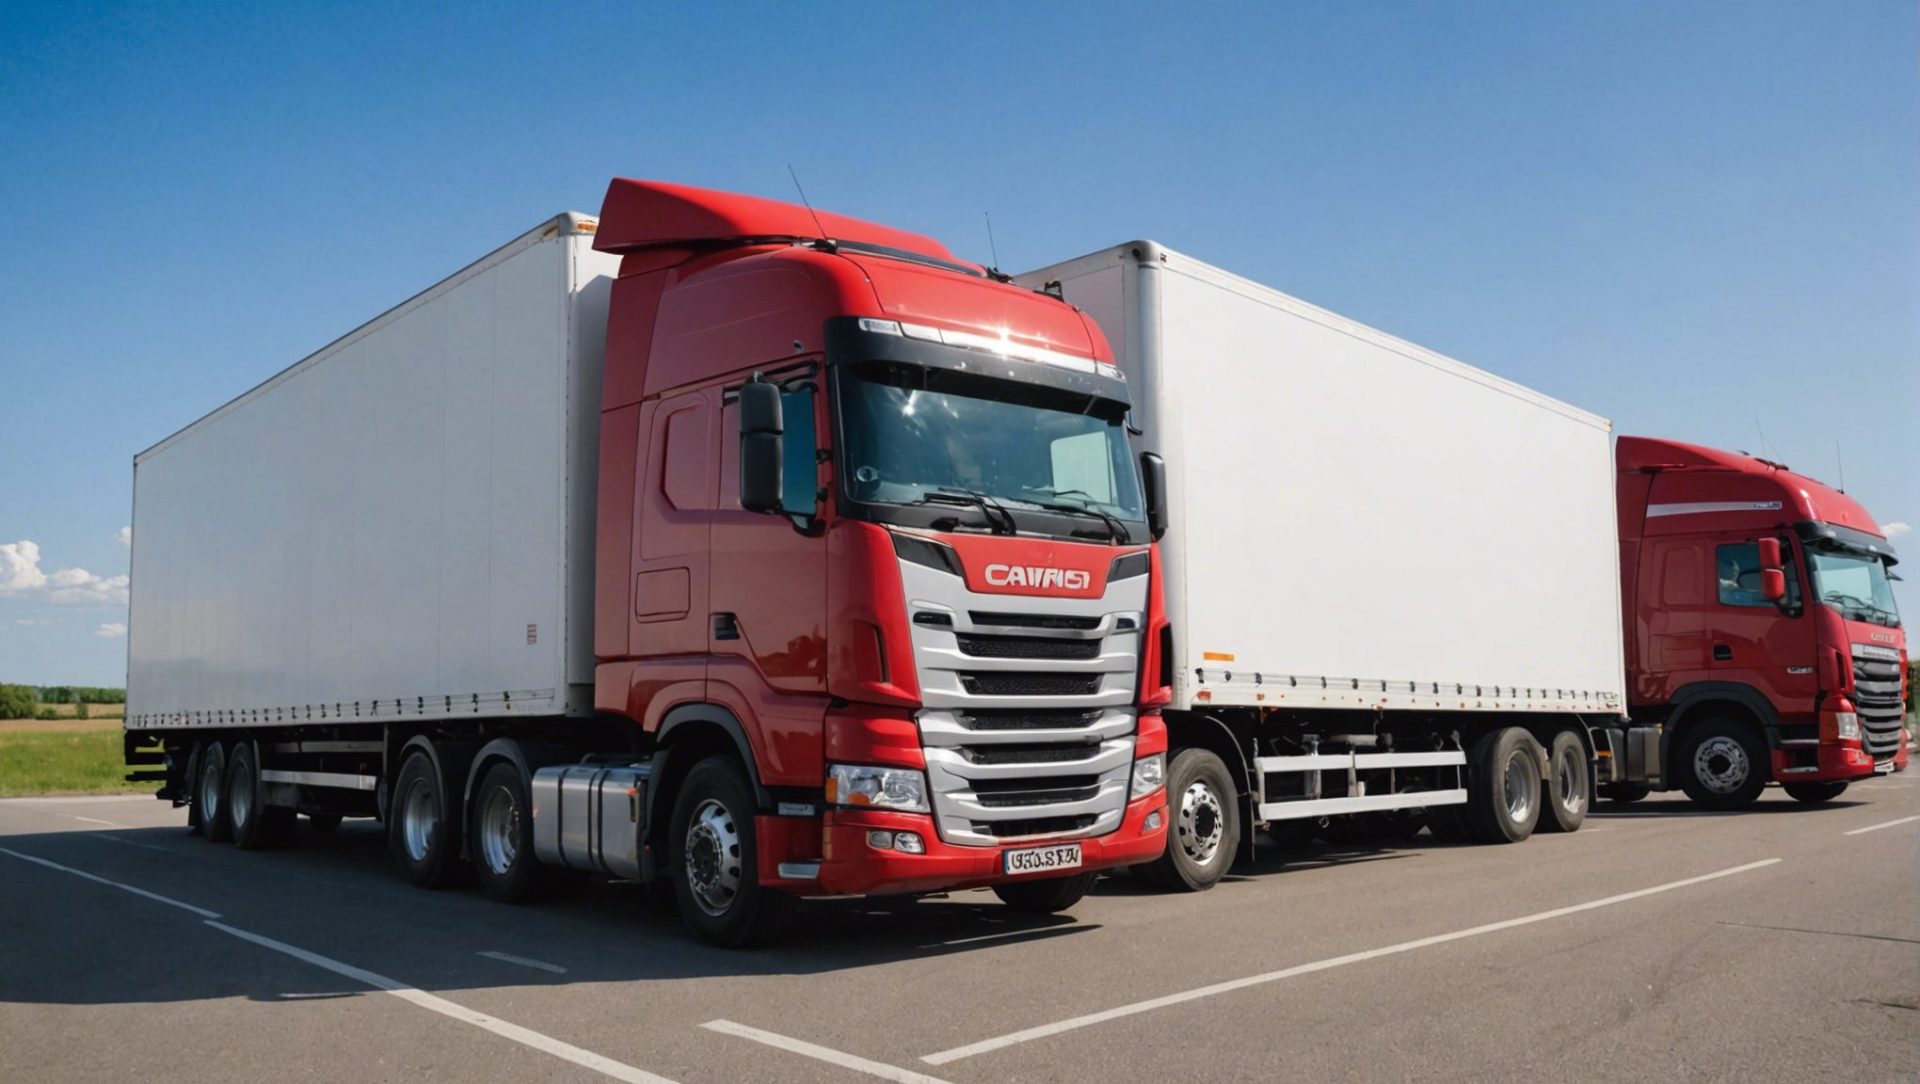 découvrez les divers types de camions de transport dans cet article informatif. trouvez des informations utiles sur les différents modèles de camions utilisés dans le secteur du transport.